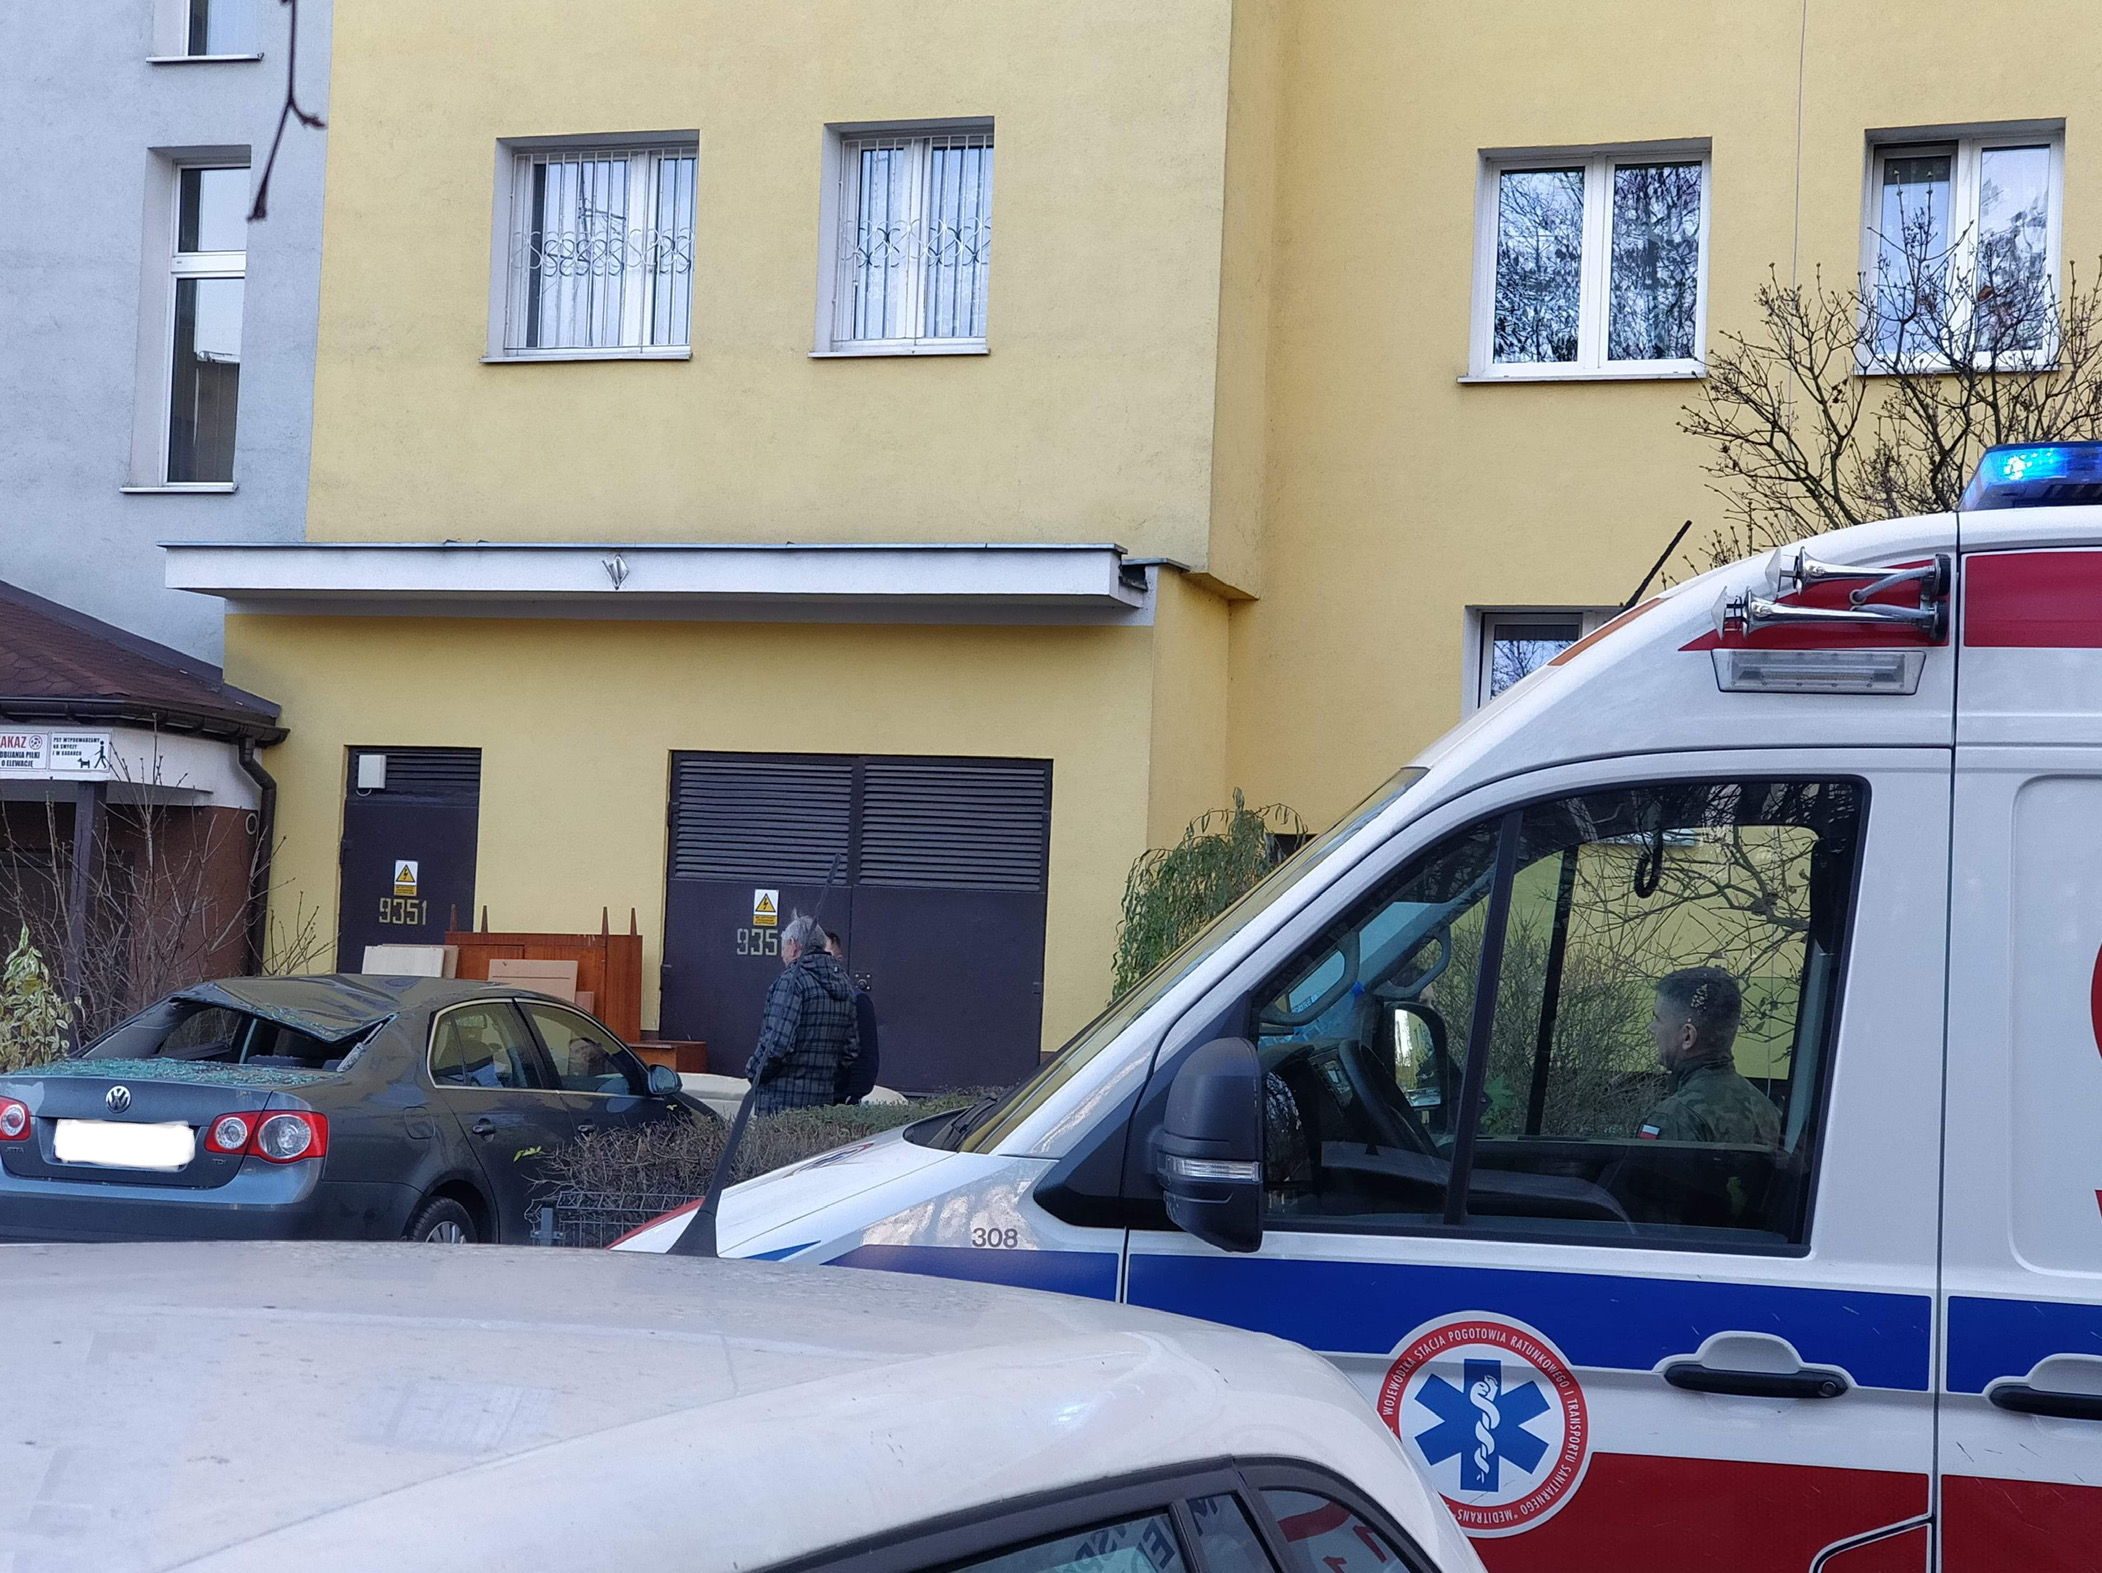 Mężczyzna wypadł z 6 piętra. Spadł na samochód Warszawa